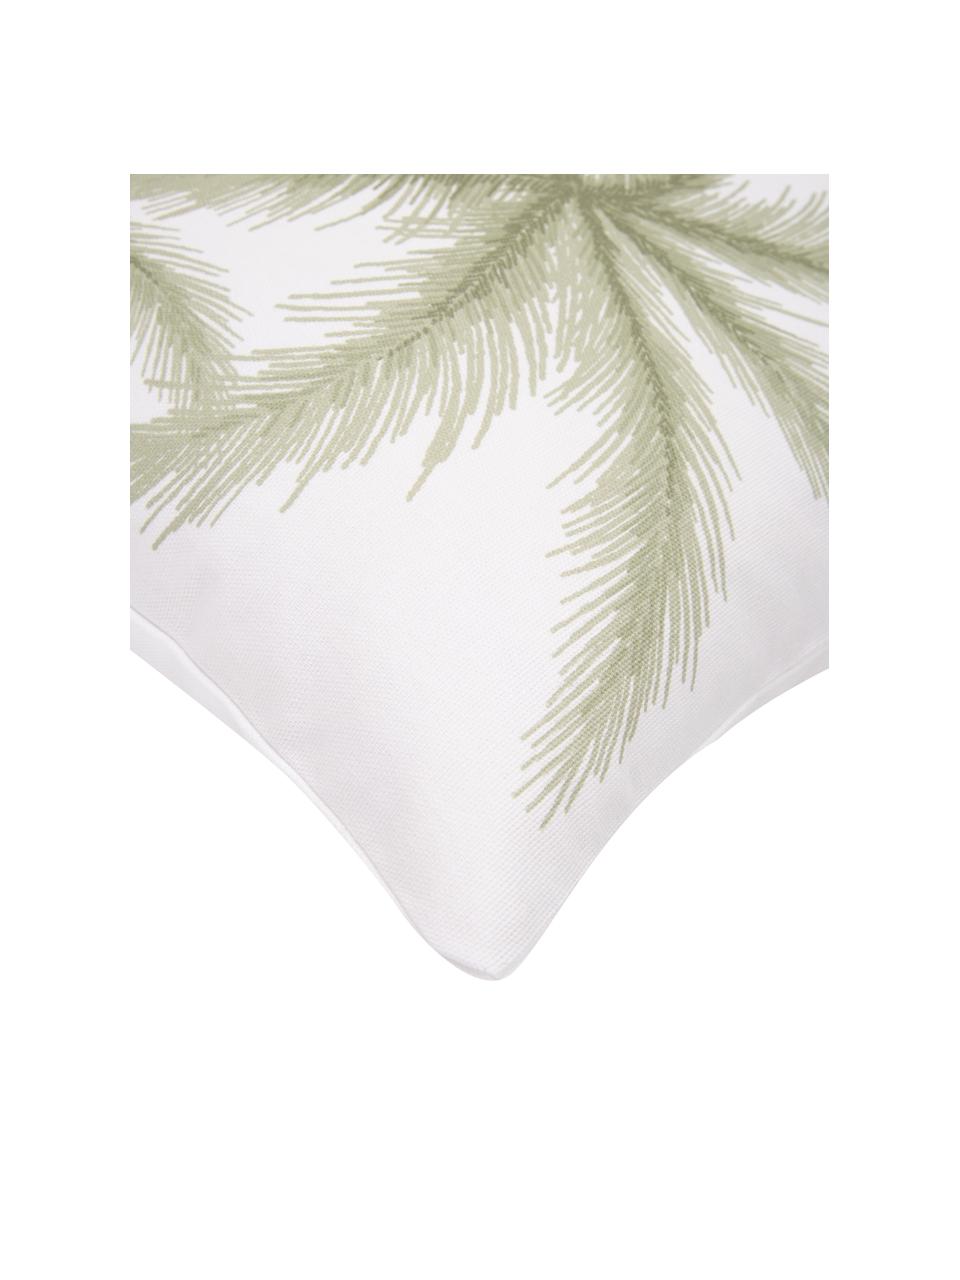 Kussenhoes Palima met palmprint van biokatoen, 100% biokatoen, GOTS-gecertificeerd, Wit, groen, B 45 x L 45 cm